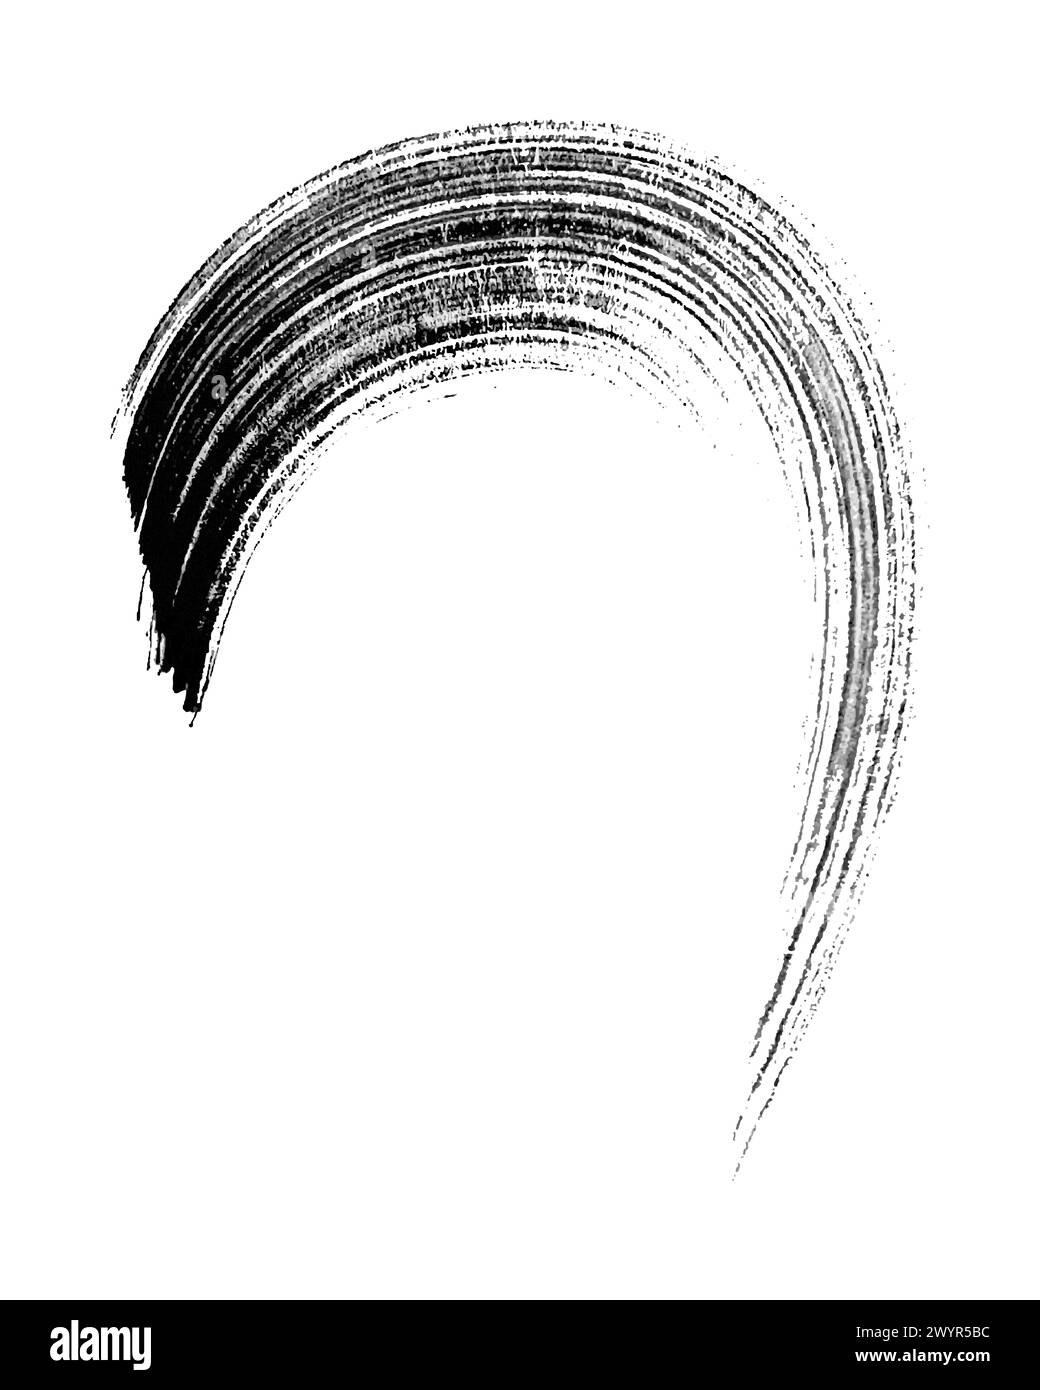 Tratto pennello circolare inchiostro acquerello nero disegnato a mano, texture grunge rotonde, isolato su sfondo bianco. Illustrazione vettoriale Illustrazione Vettoriale